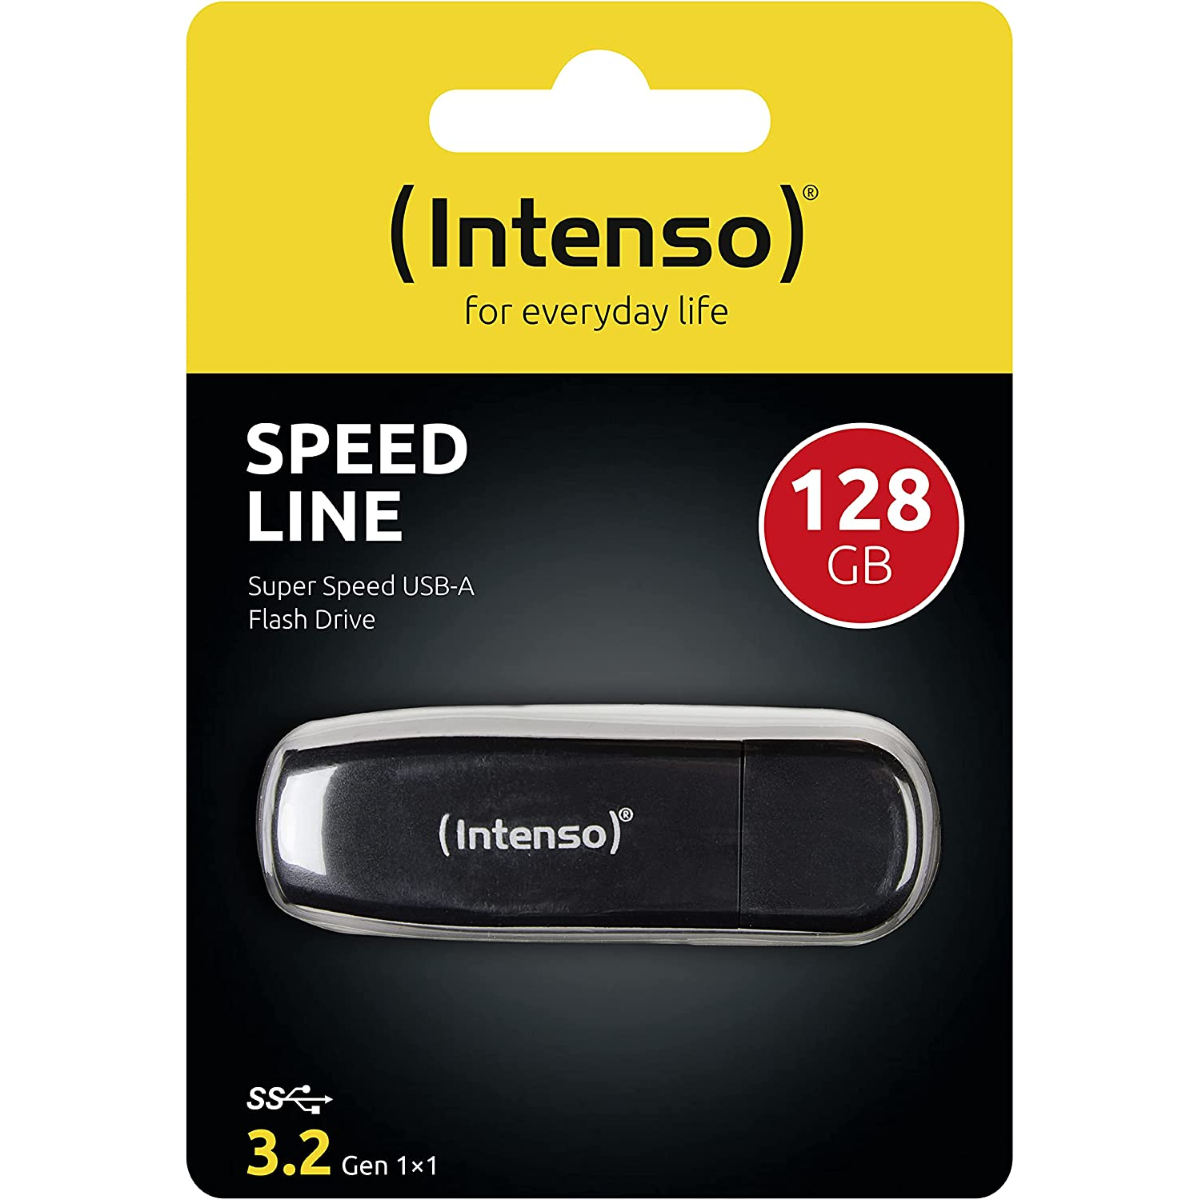 48665 - PEN DRIVE 128 GB INTENSO SPEED LINE USB 3.2 GEN1 - INTENSO